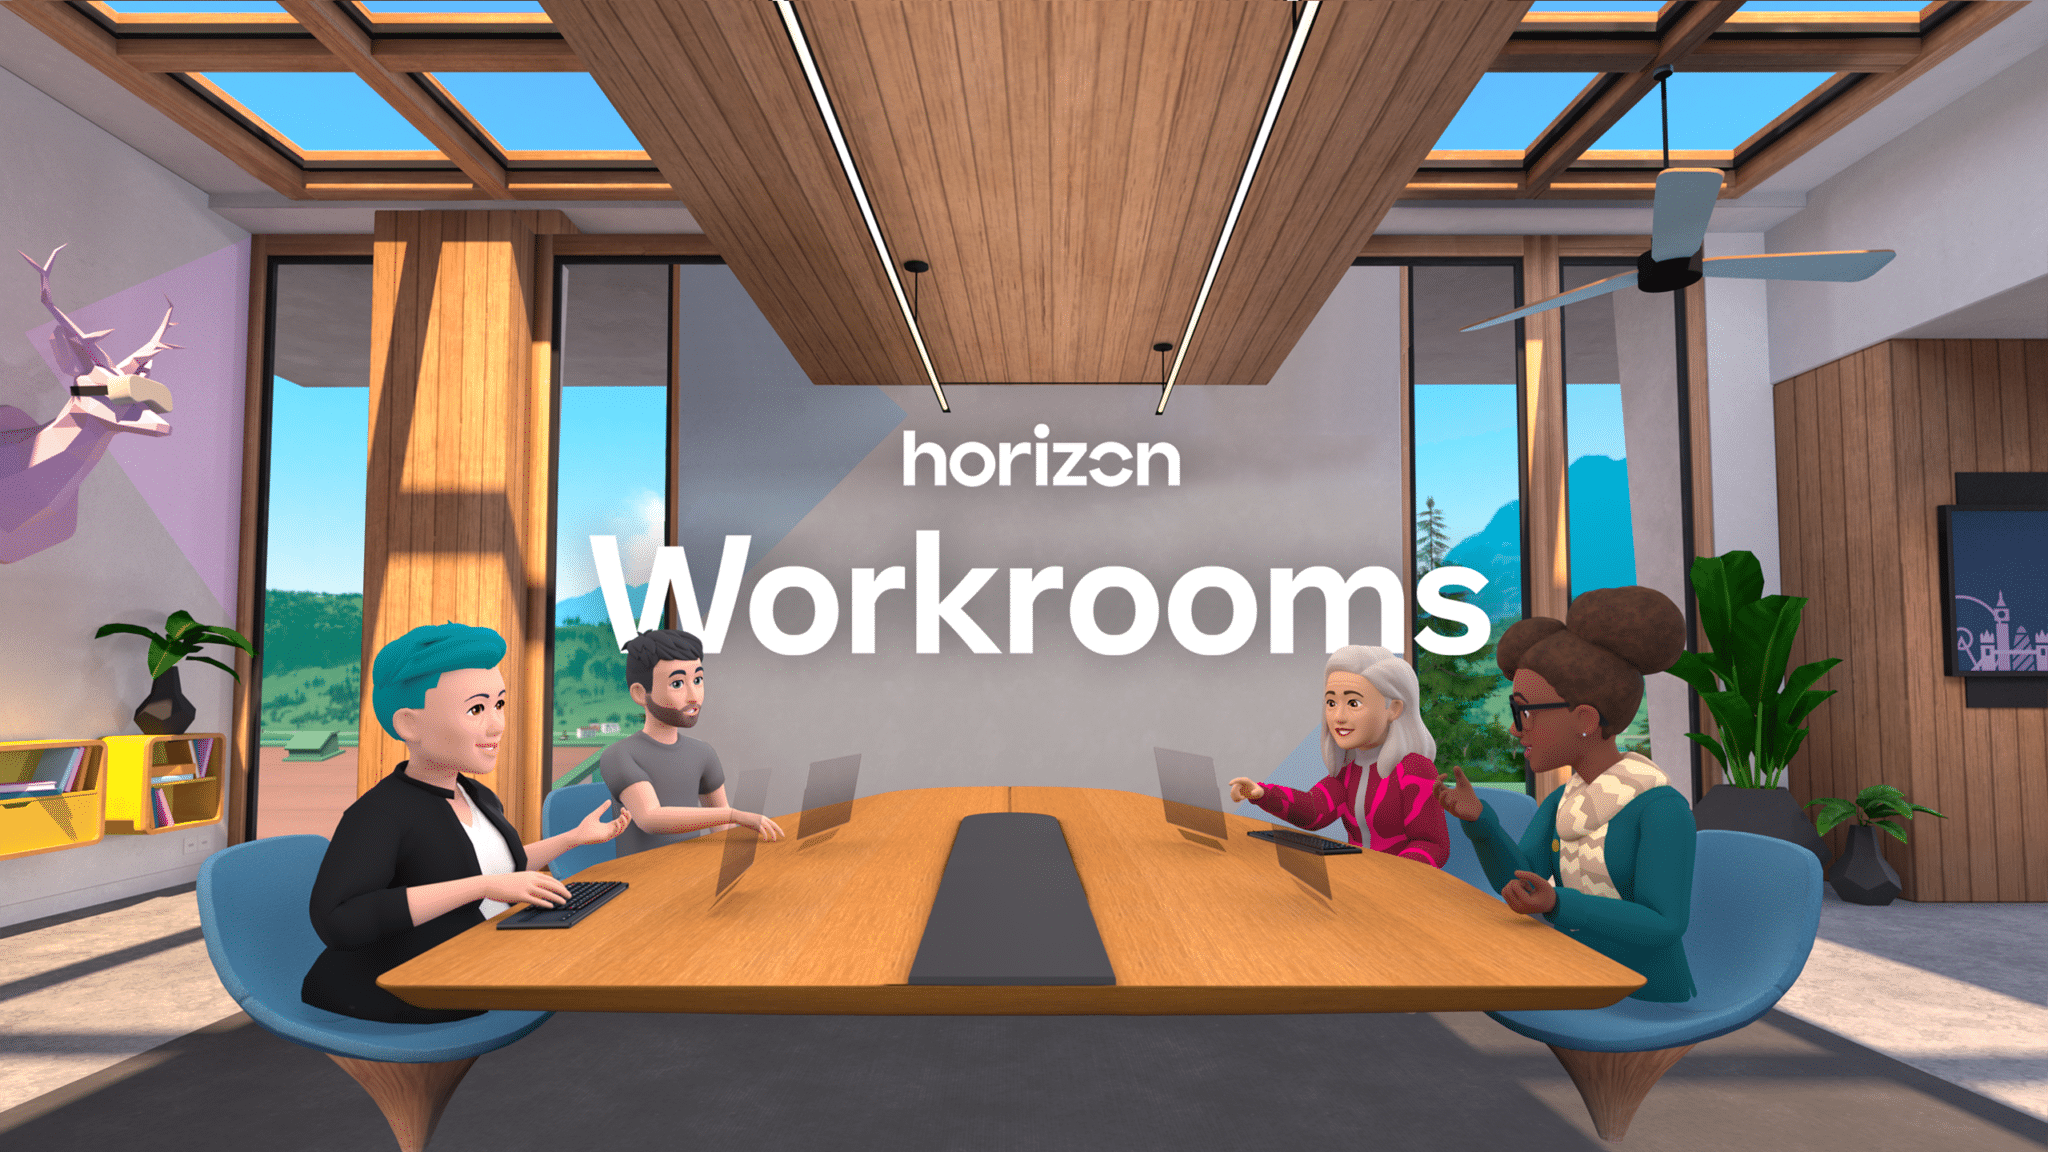 Horizon Workrooms bo poenostavil, a odstranil ključno funkcijo